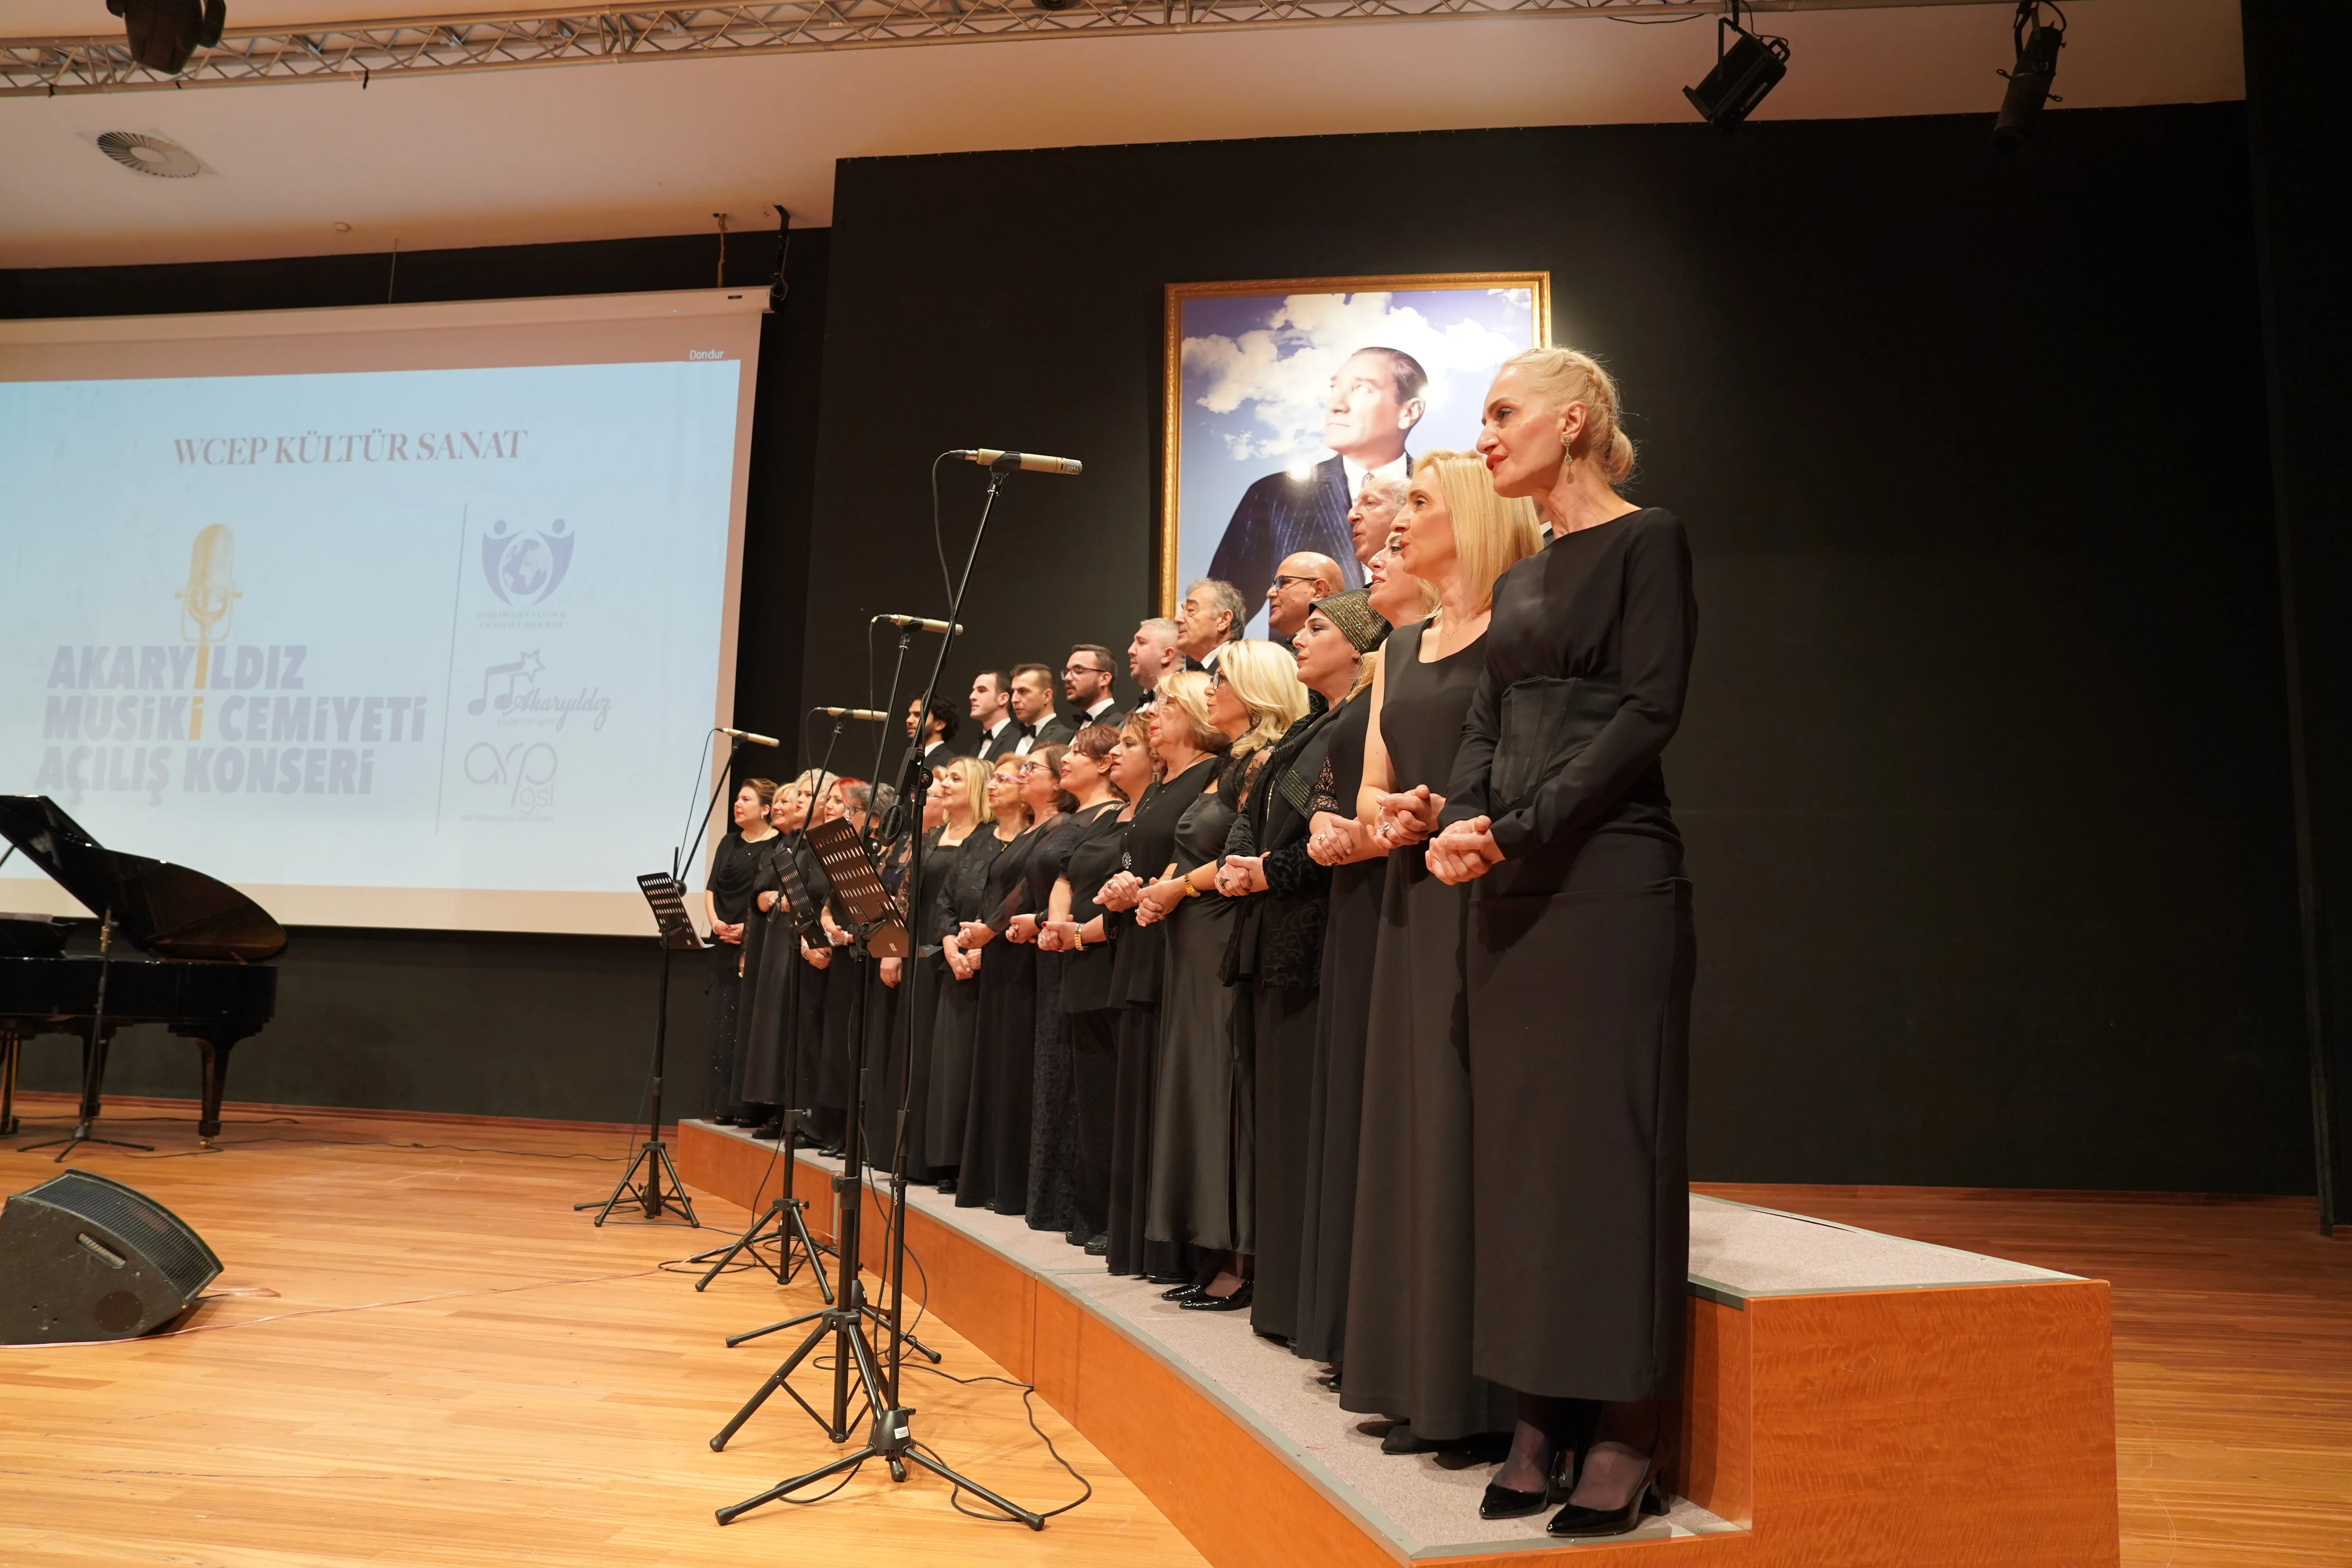 Akaryıldız Musiki Cemiyeti Açılış Konseri 25 Kasım 2023 tarihinde gerçekleşti.